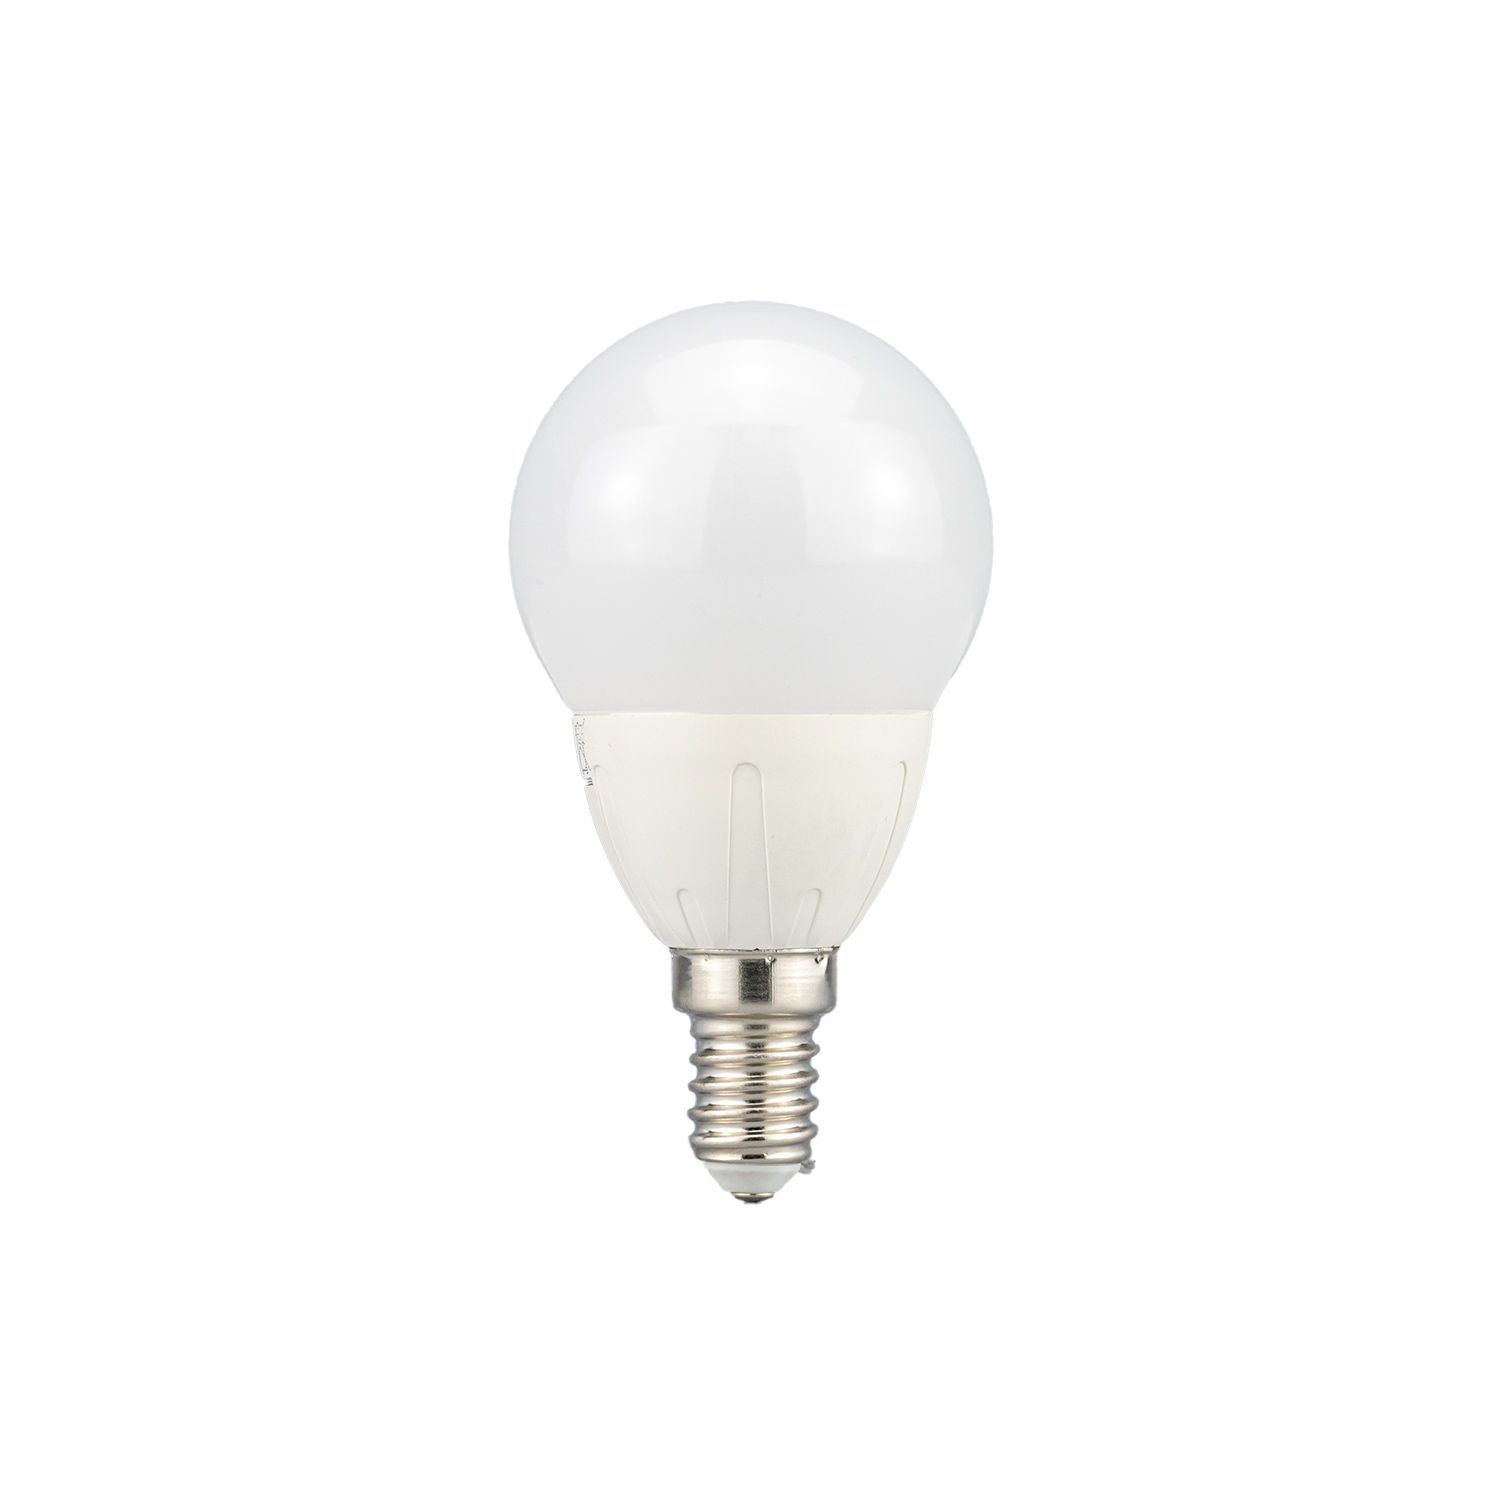 Bombillas LED 5W casquillos E14 G45 luz cálida neutra fría interior IP20 blanco